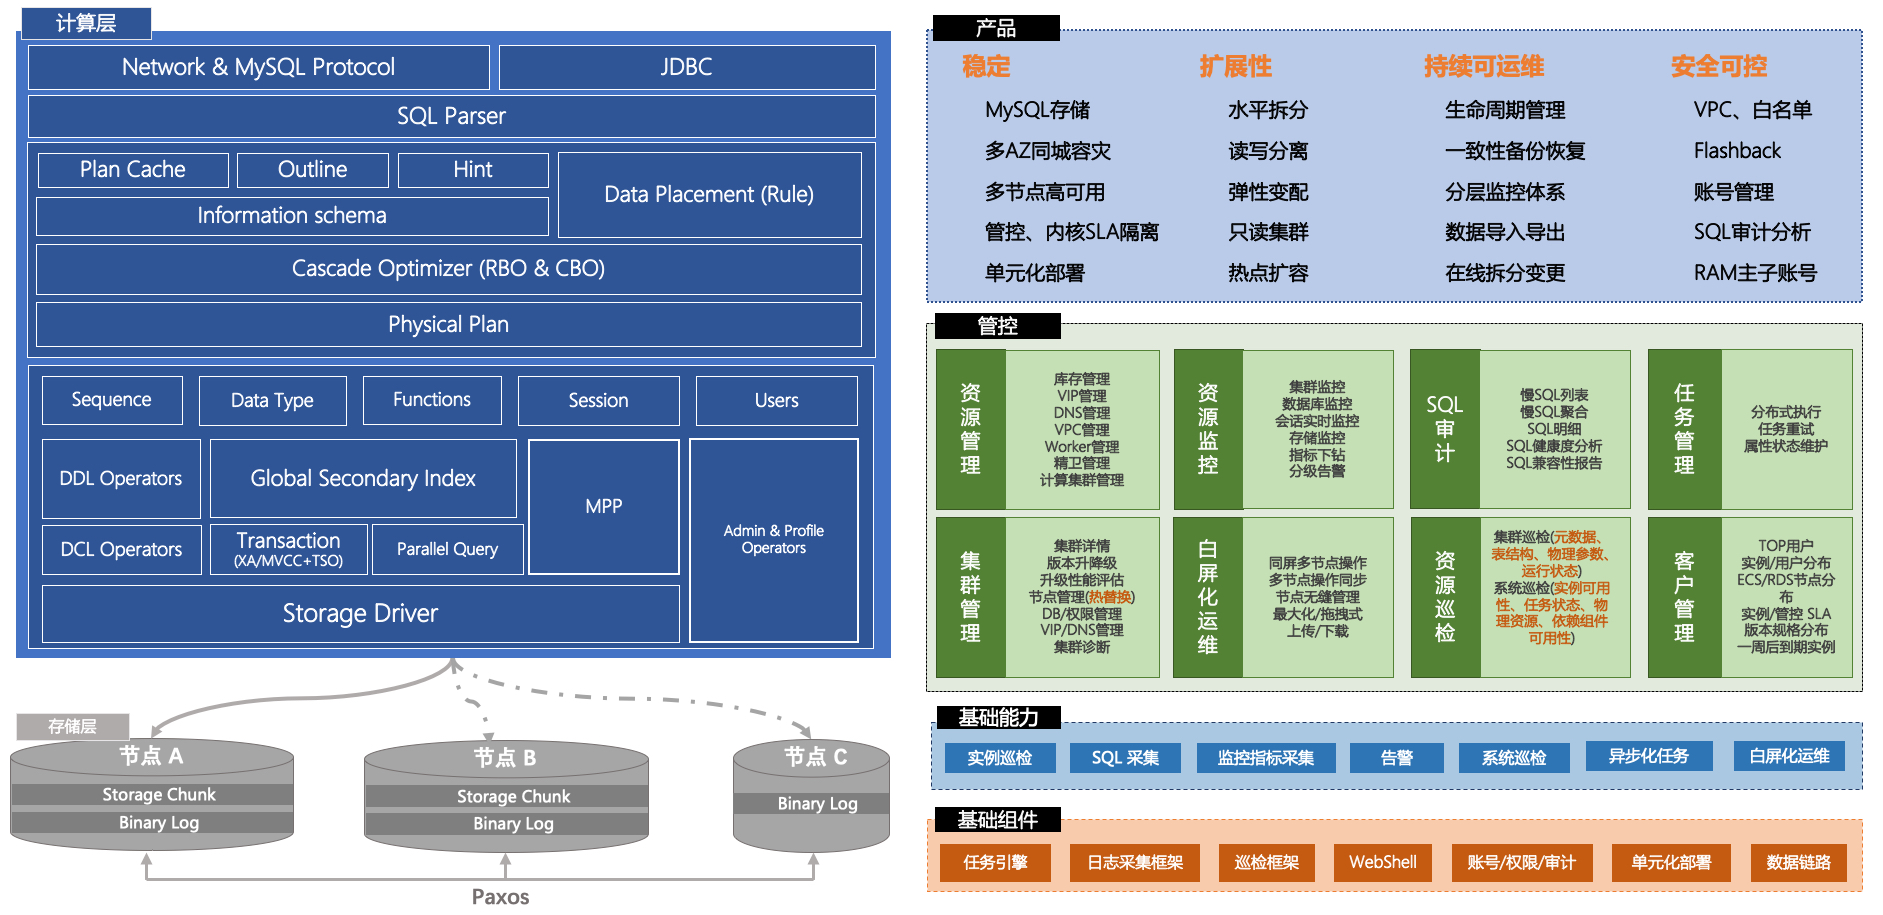 一张图读懂阿里云数据库架构与选型 - jyzhou - 博客园